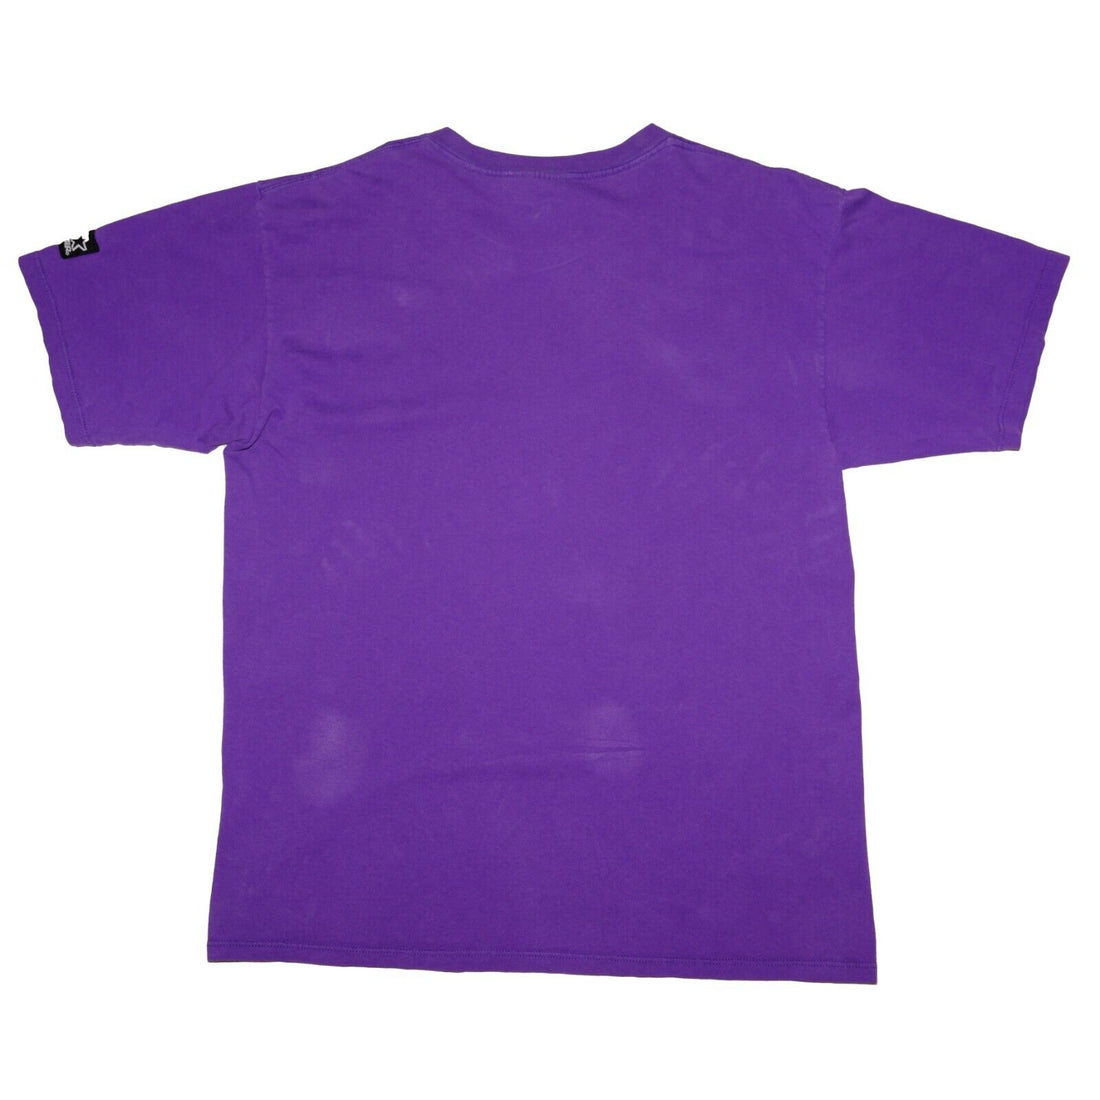 Vintage Minnesota Vikings Cris Carter Starter T-Shirt Size Large Purple NFL